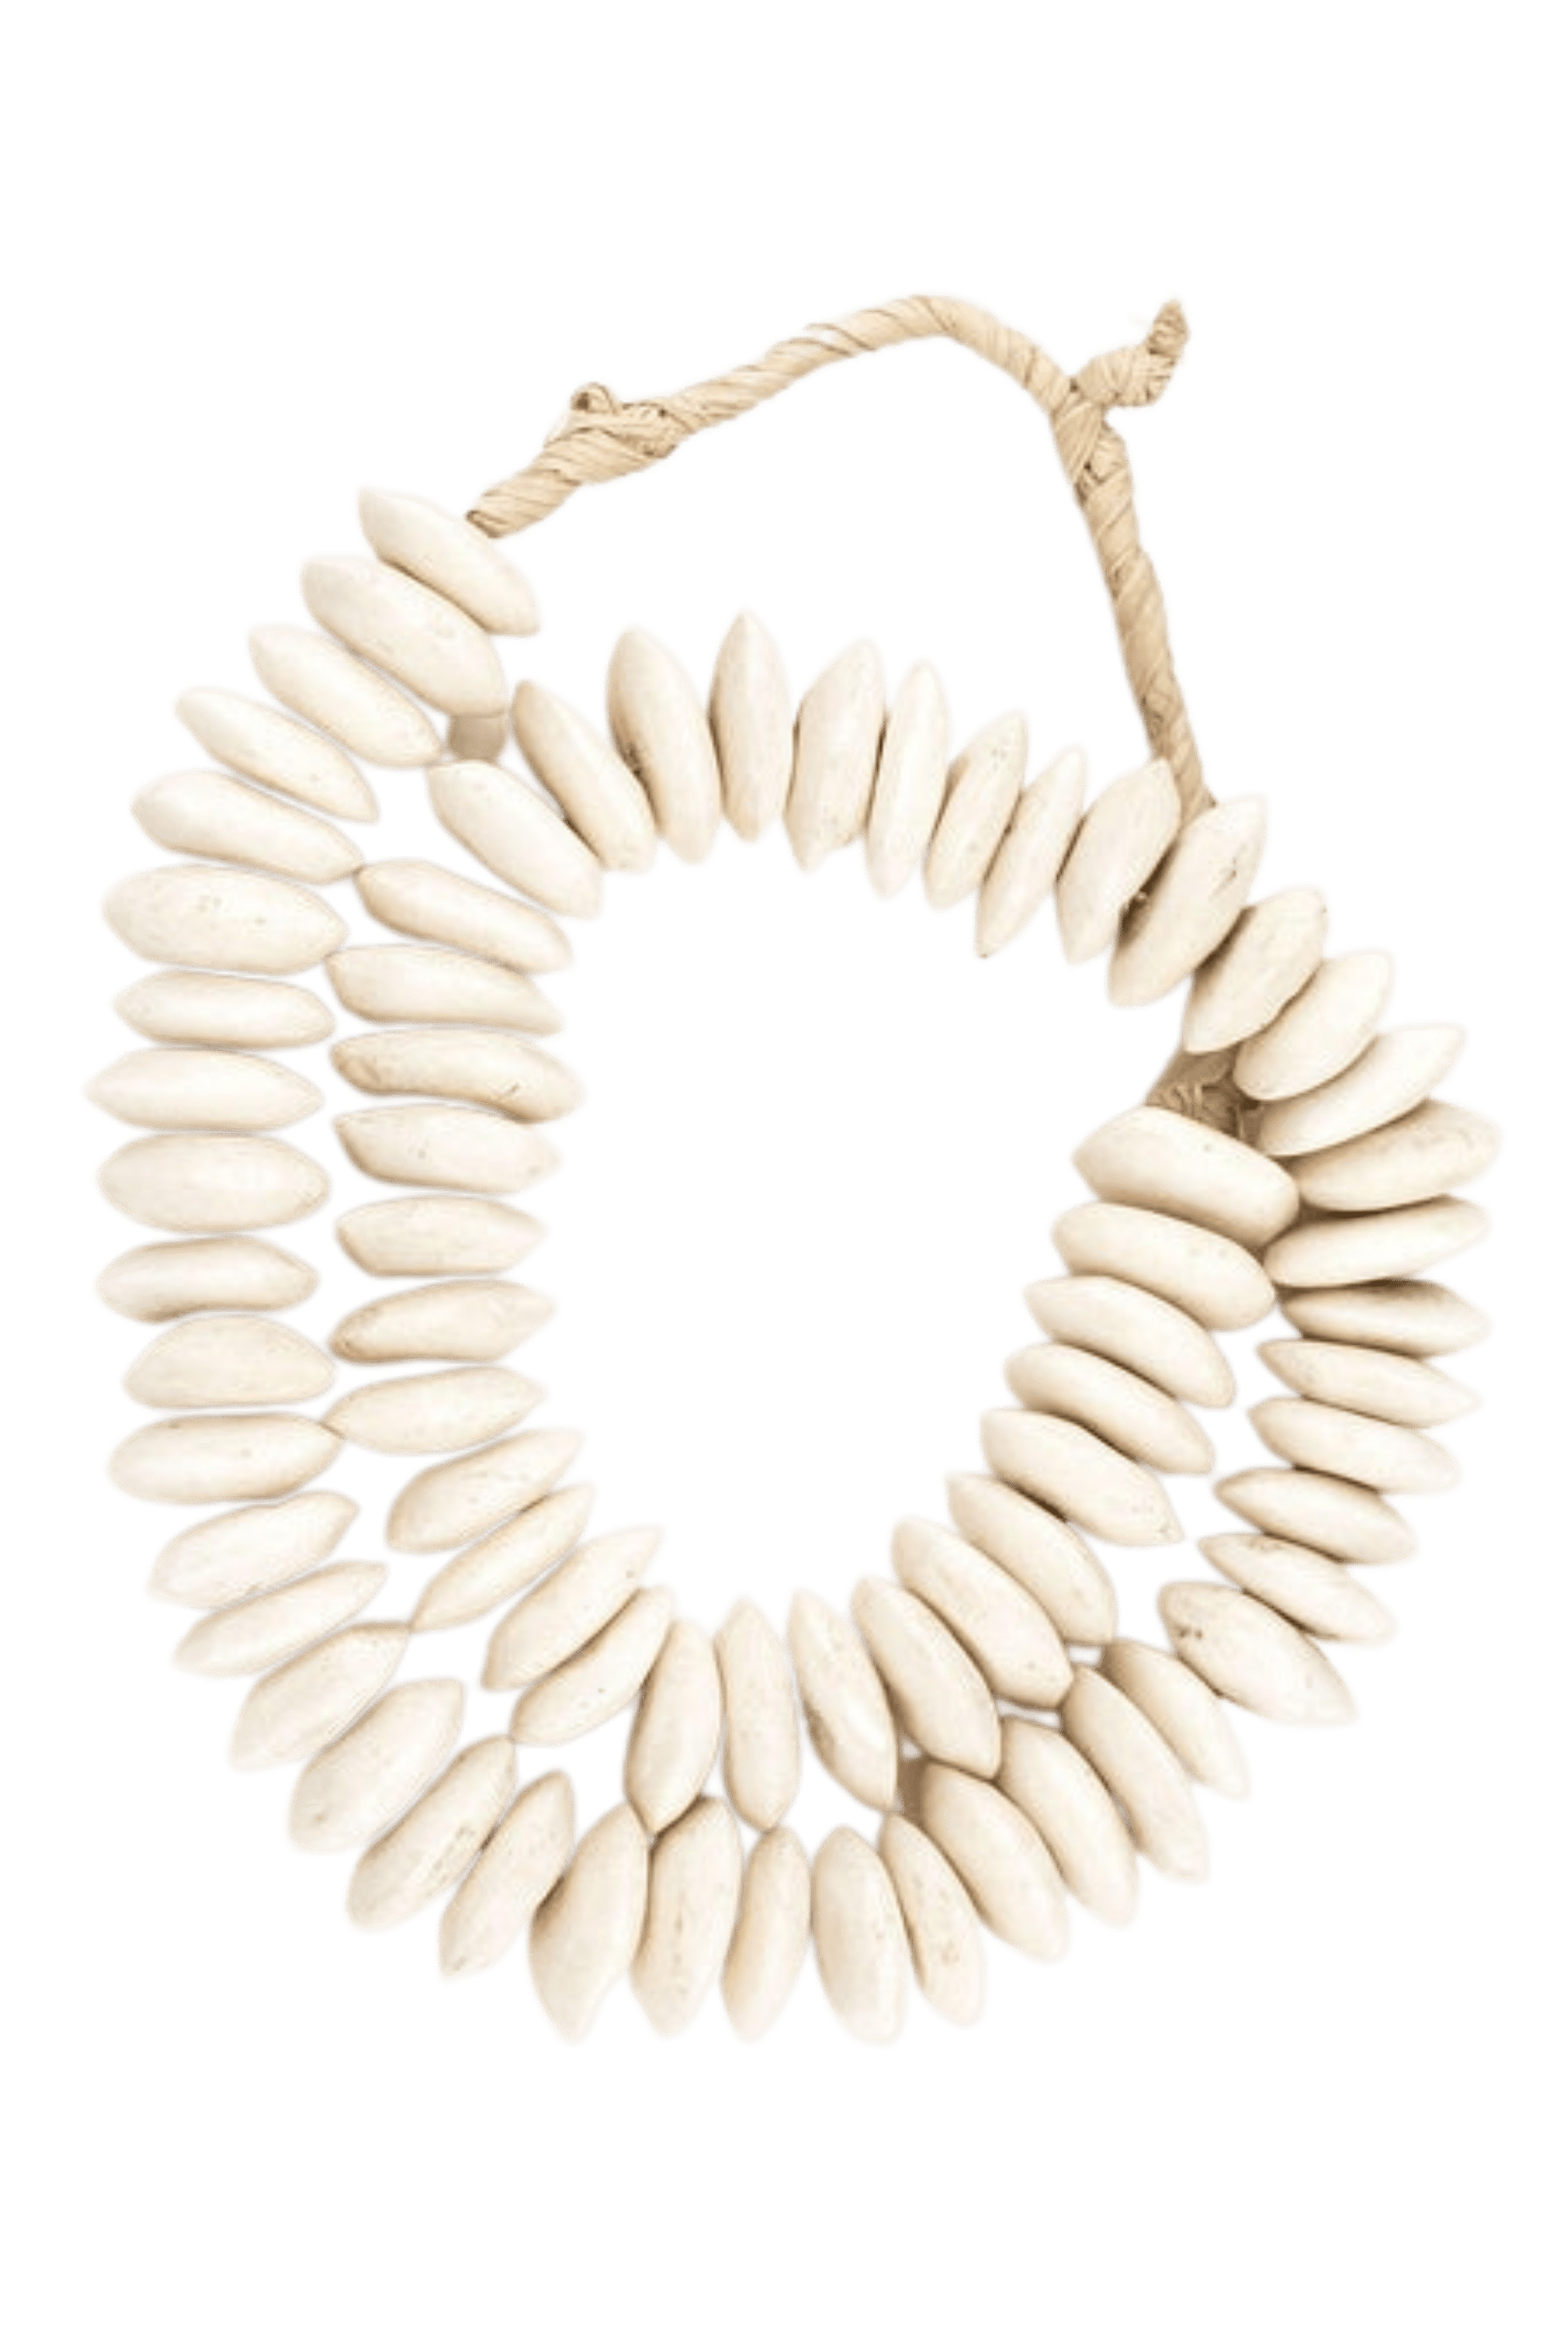 70 White Bone Beads